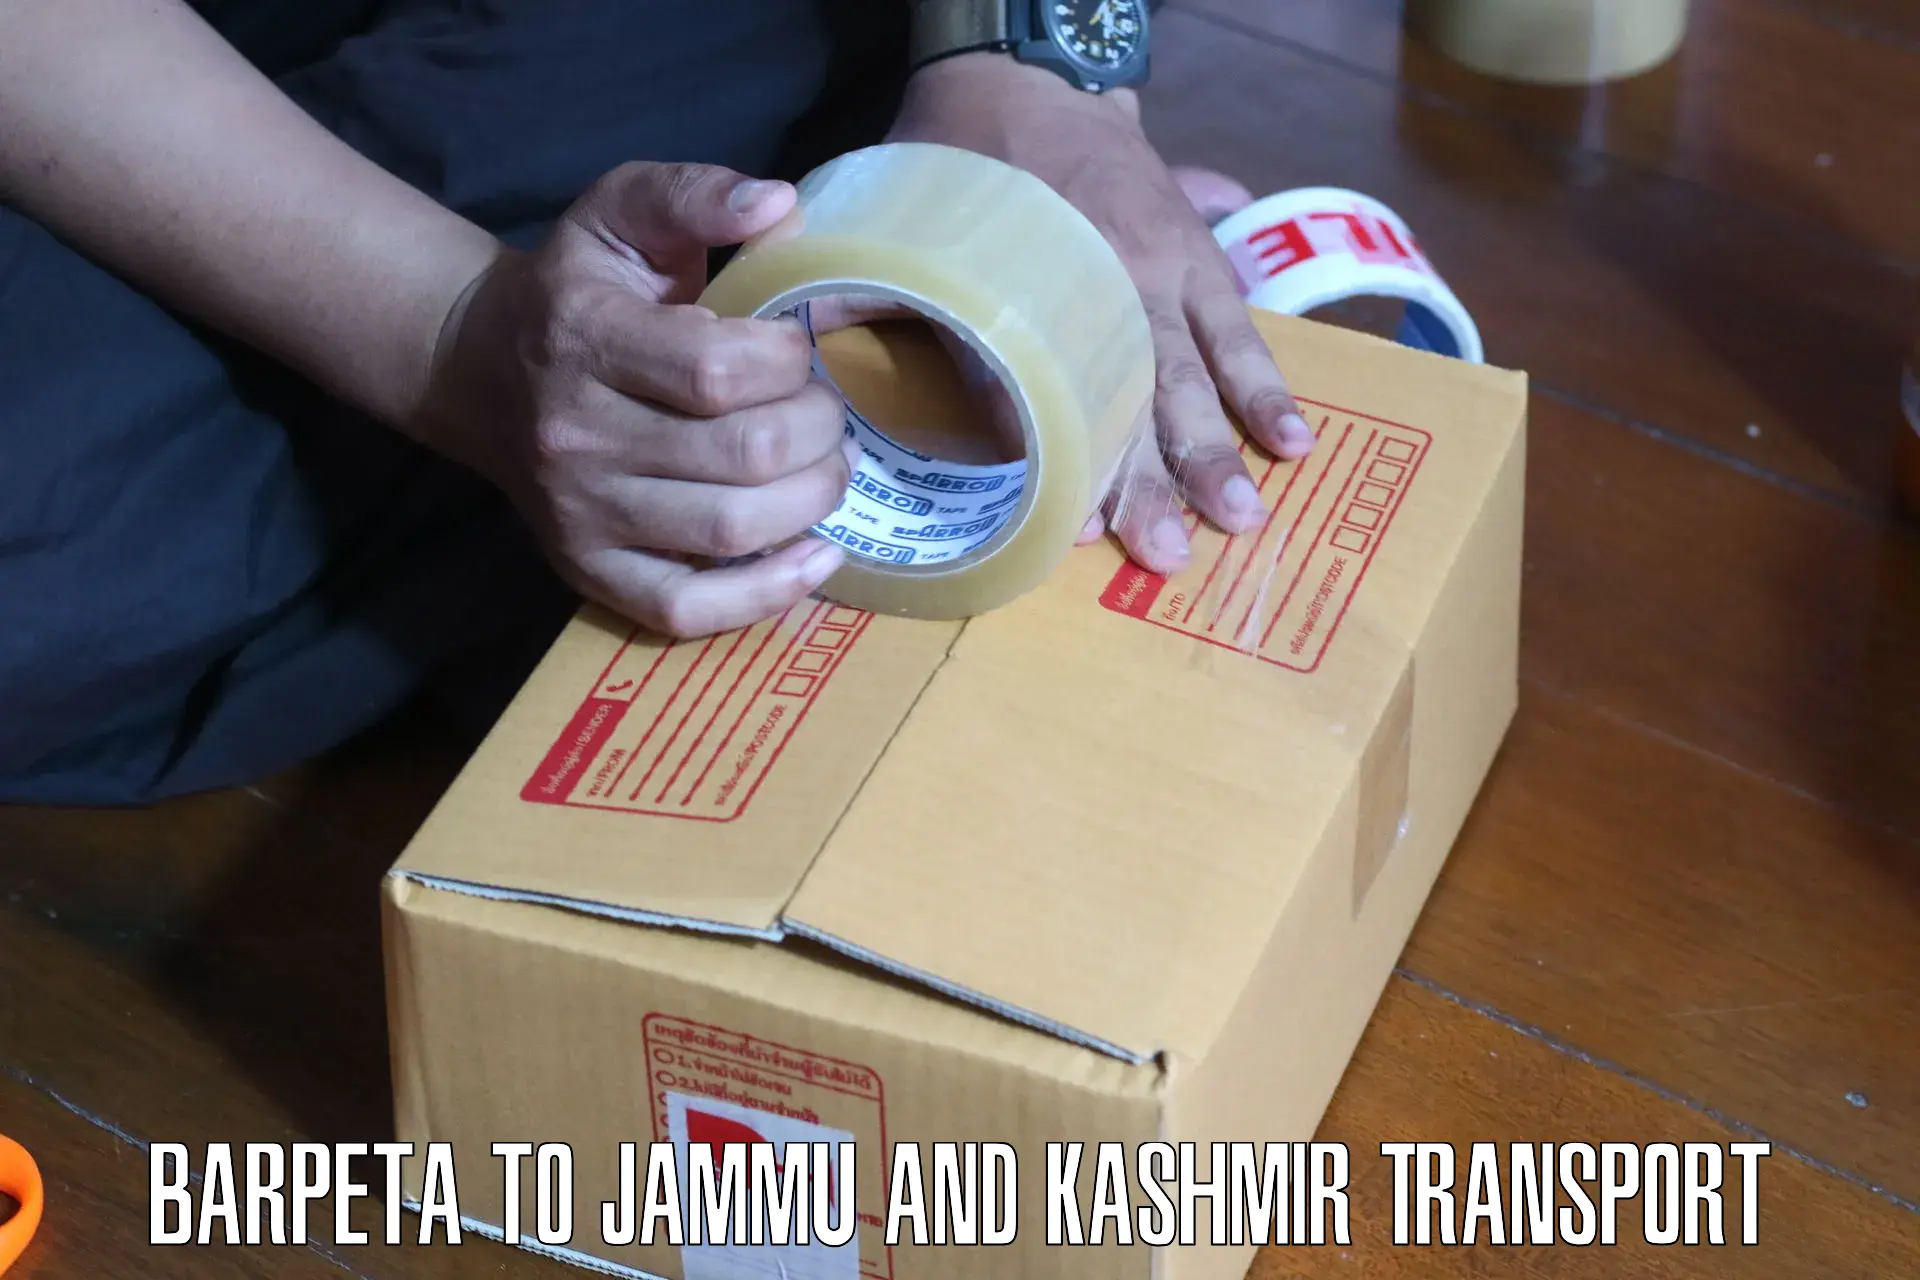 Bike shipping service Barpeta to Jammu and Kashmir